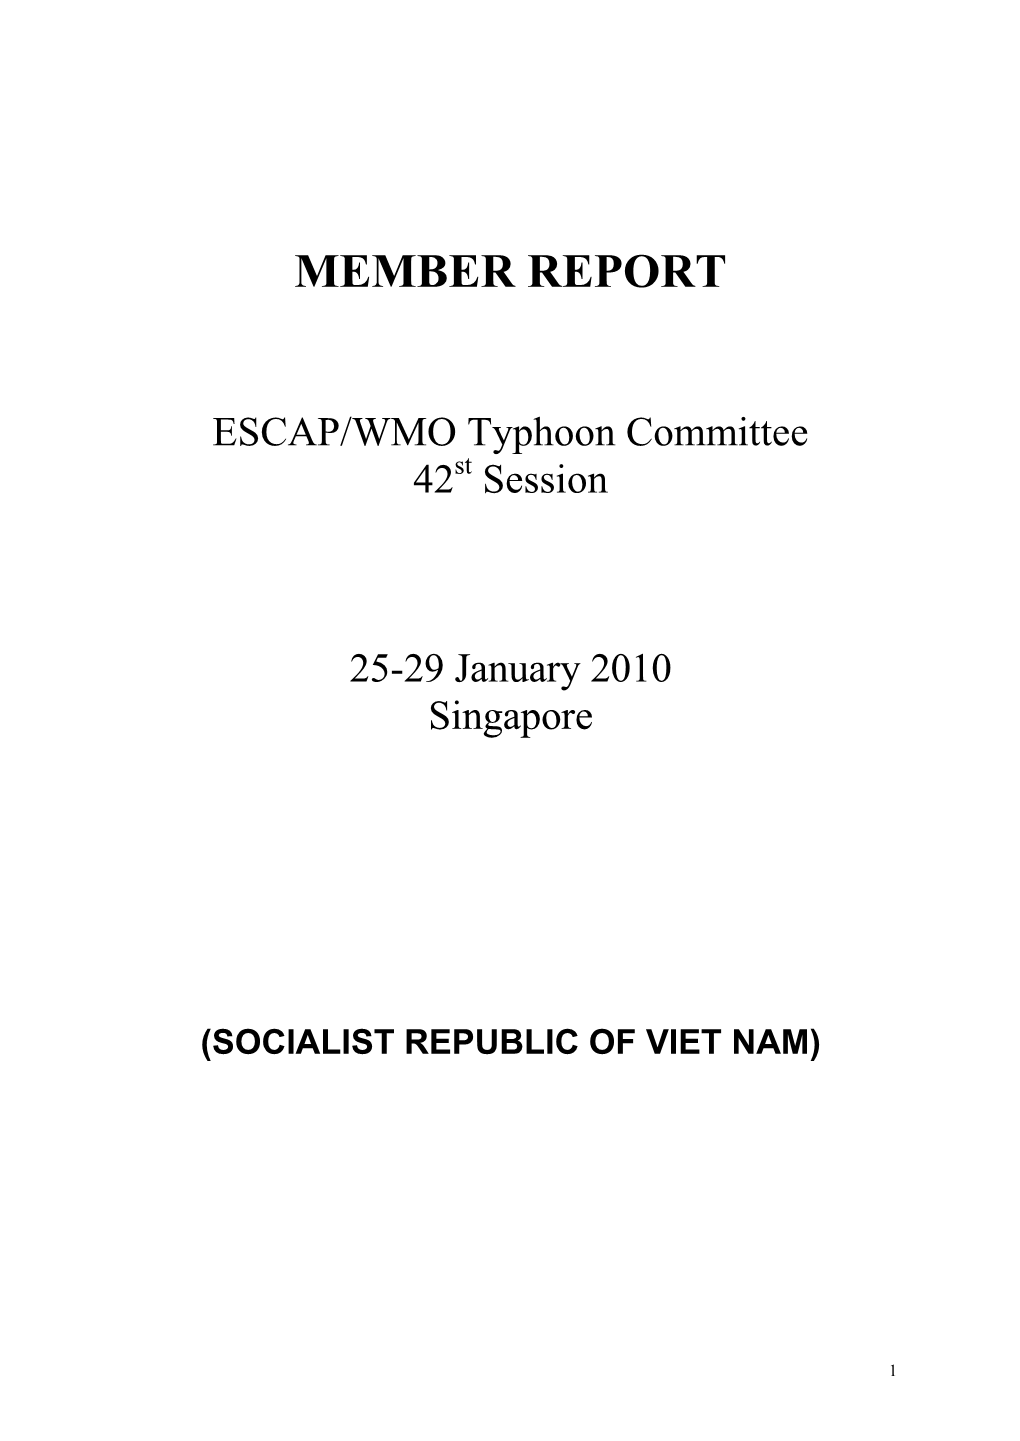 Member Report